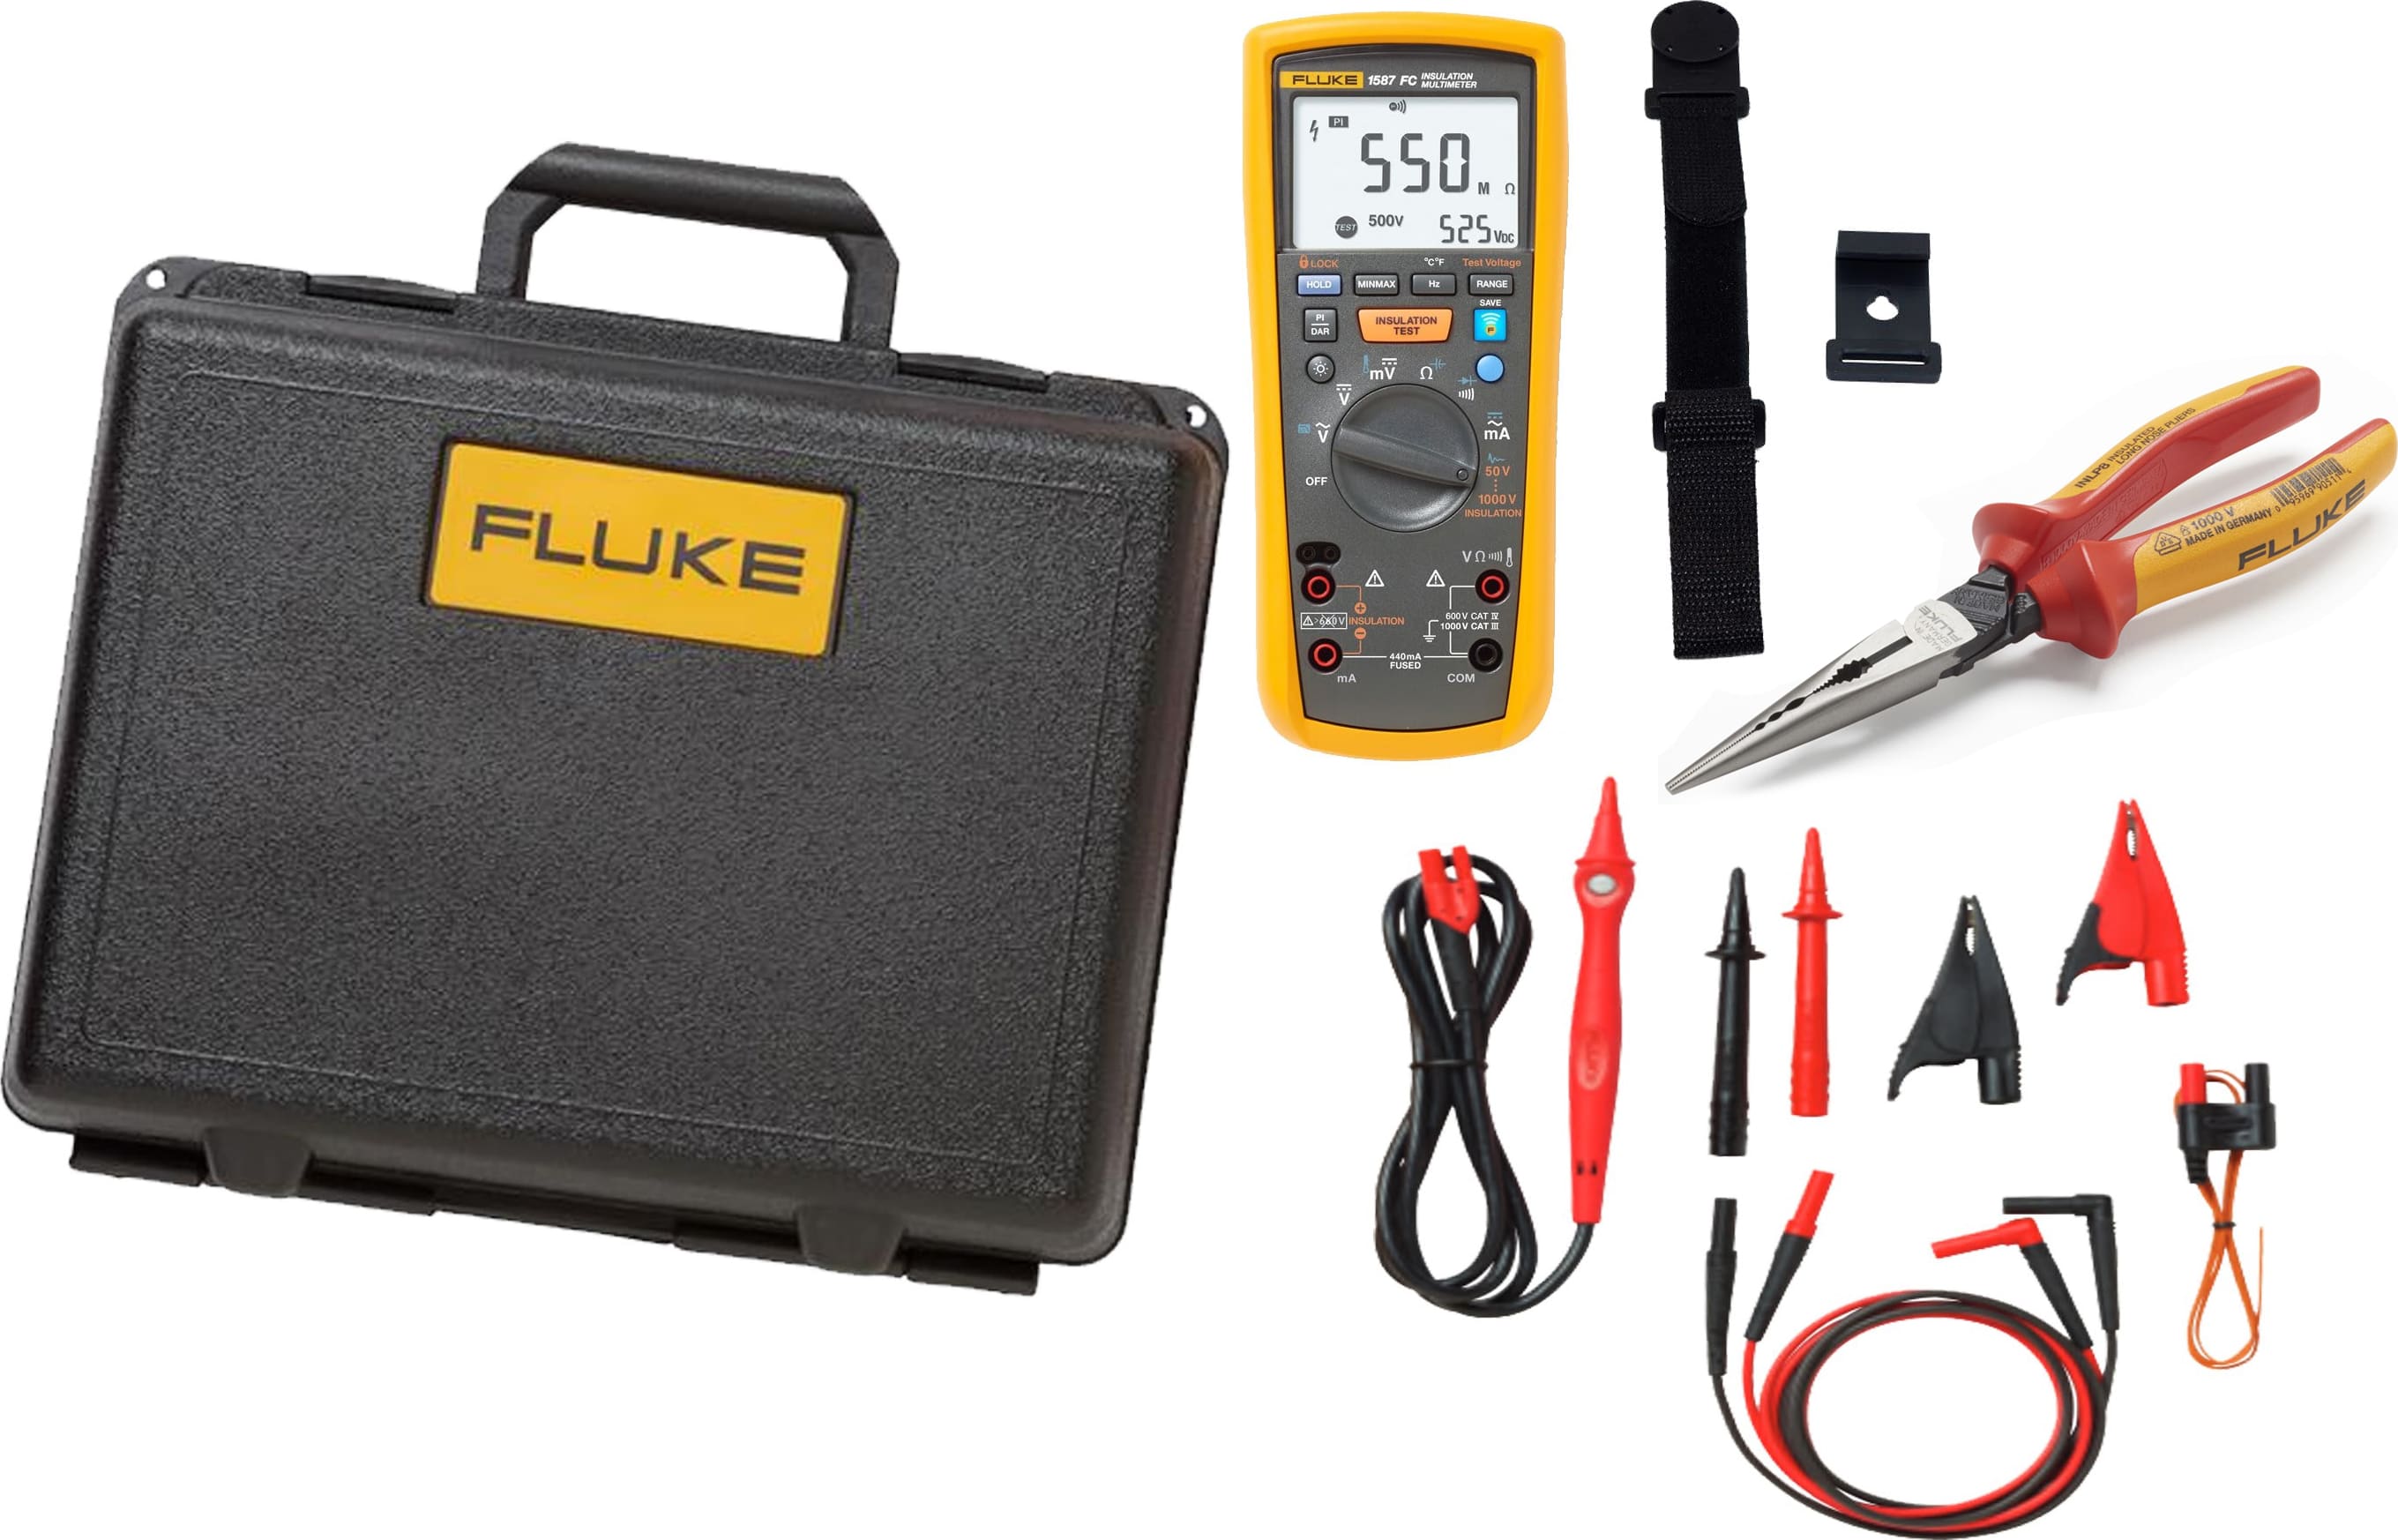 Fluke 1587 FC PRO - Insulation Multimeter with Fluke Connect